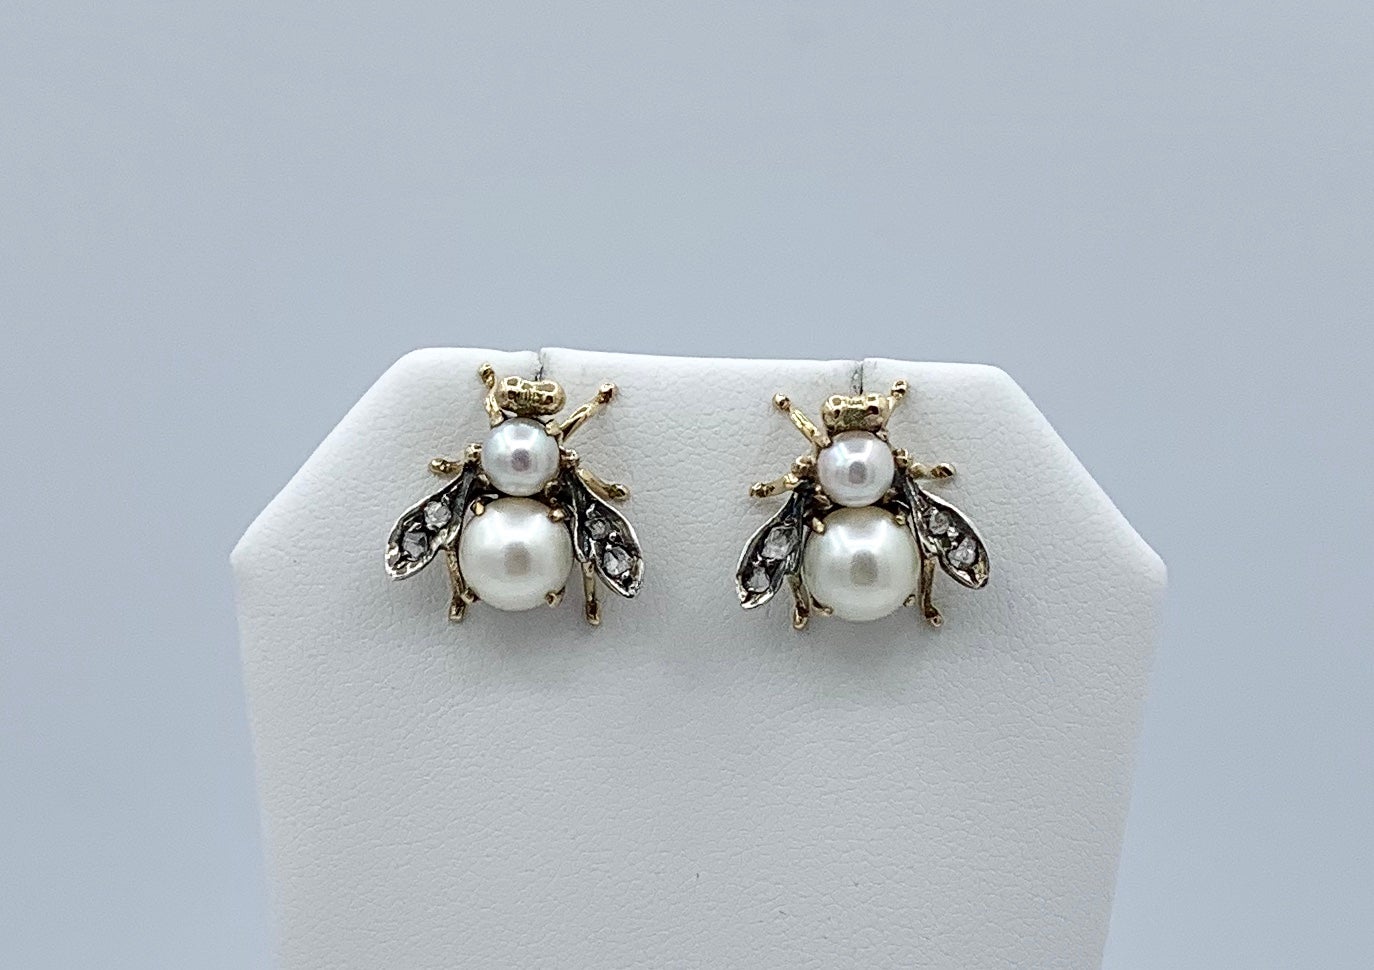 Dies ist ein wunderbares Paar seltener antiker viktorianischer Fliegeninsekten-Ohrringe mit Diamanten im Rosenschliff und Perlen in 14 Karat Weiß- und Gelbgold.  Die viktorianischen und edwardianischen Insektenschmuckstücke sind von höchster